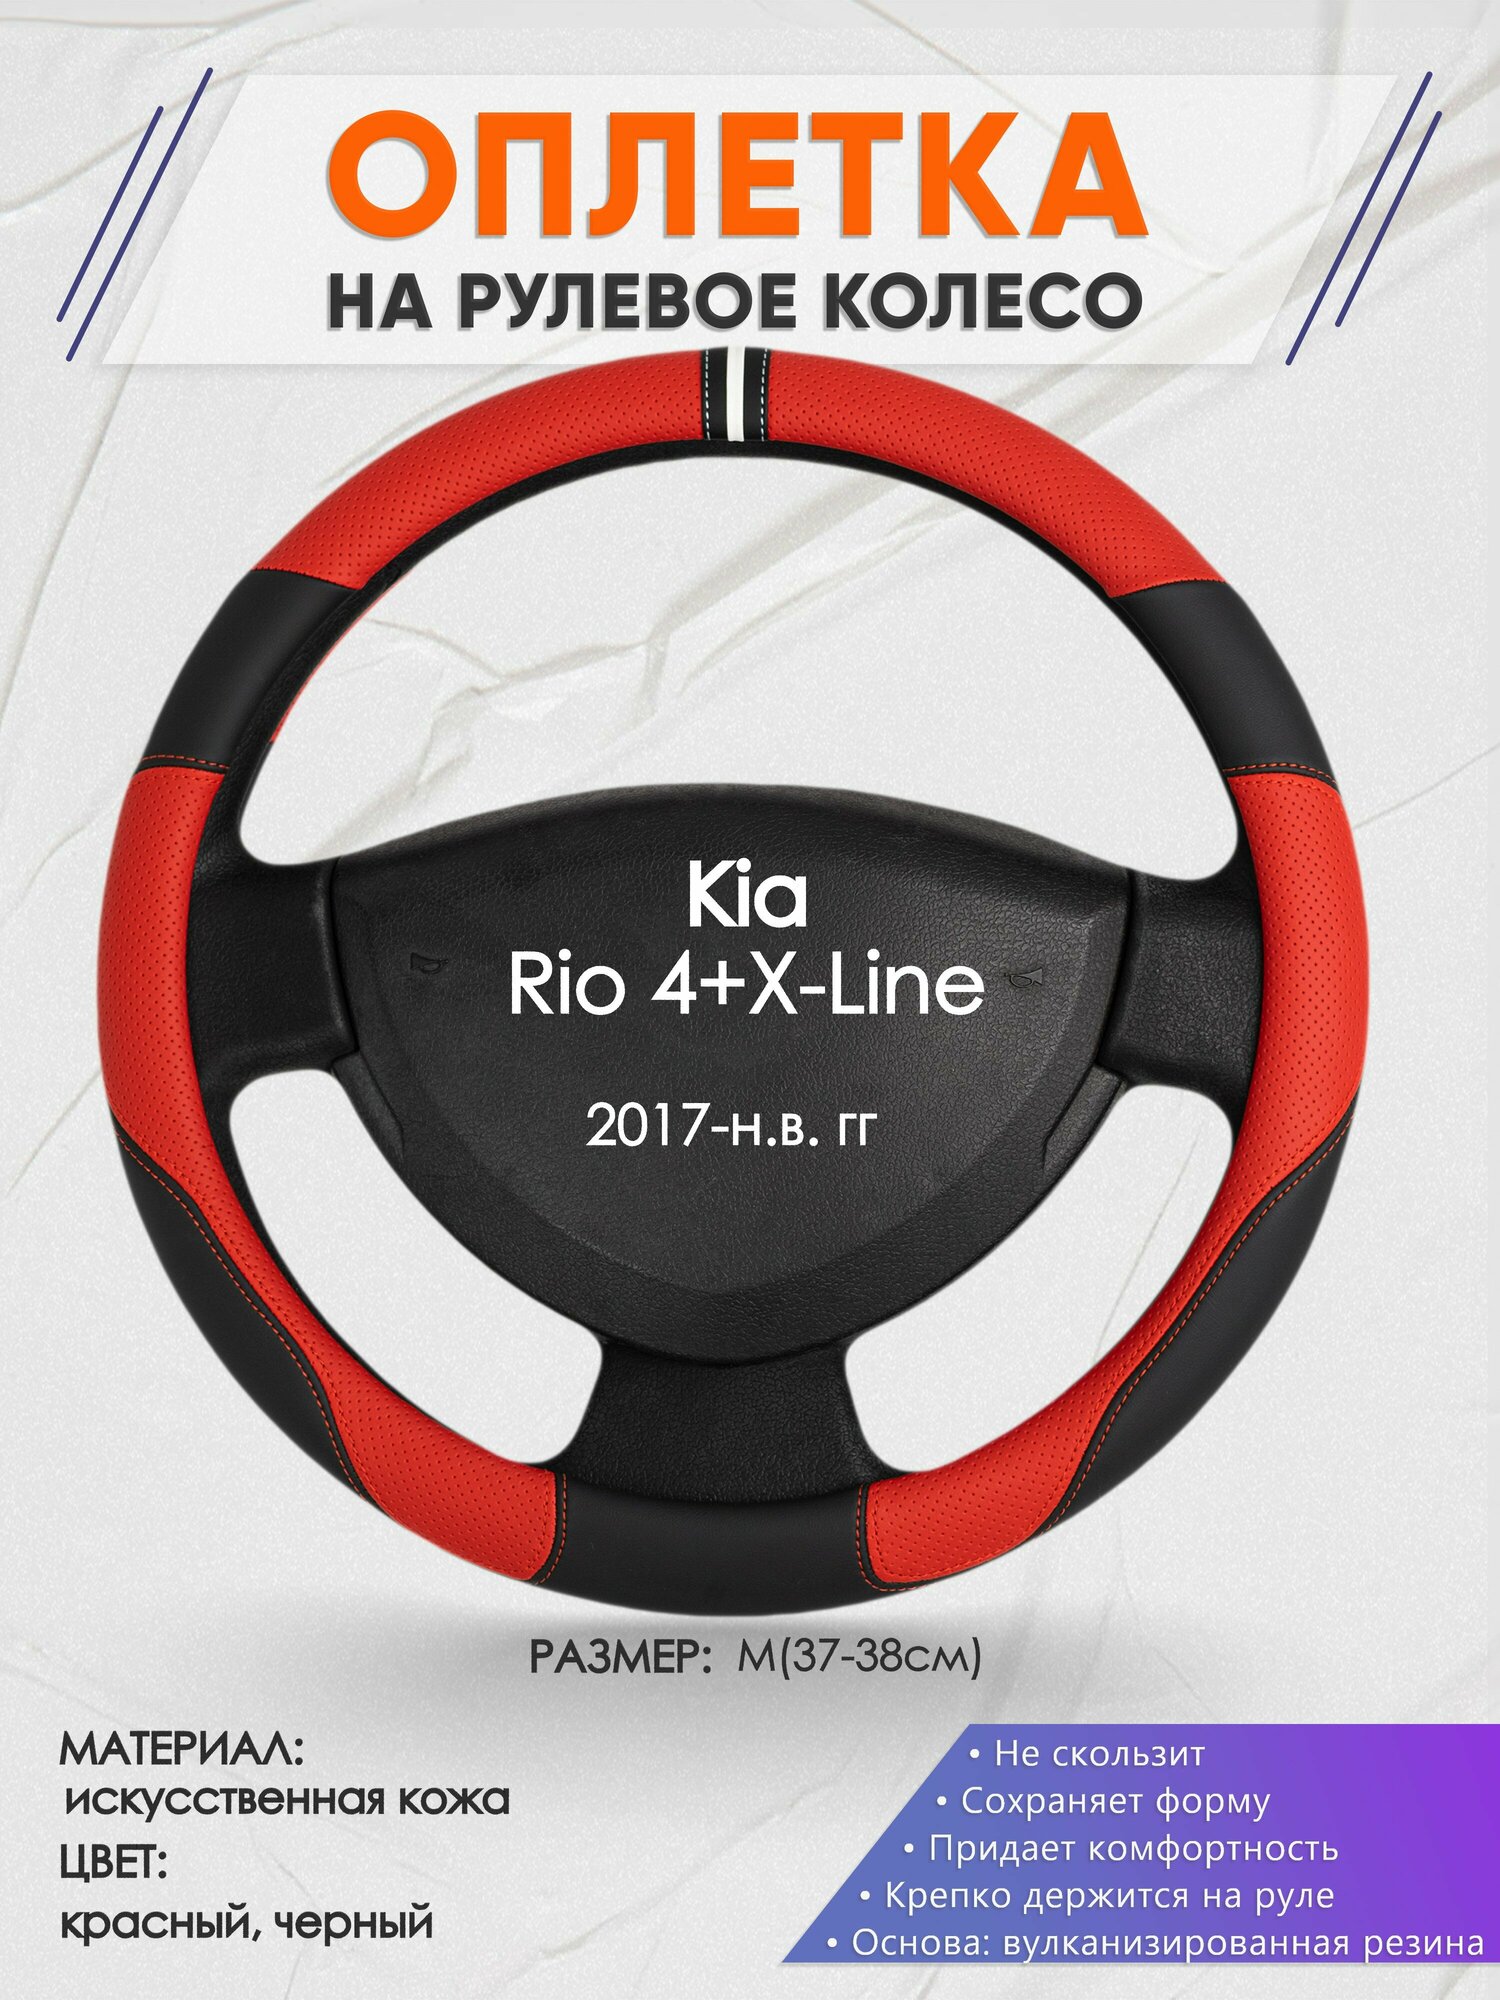 Оплетка на руль для Kia Rio 4+X-Line(Киа Рио 4 / Икс Лайн) 2017-н. в, M(37-38см), Искусственная кожа 04